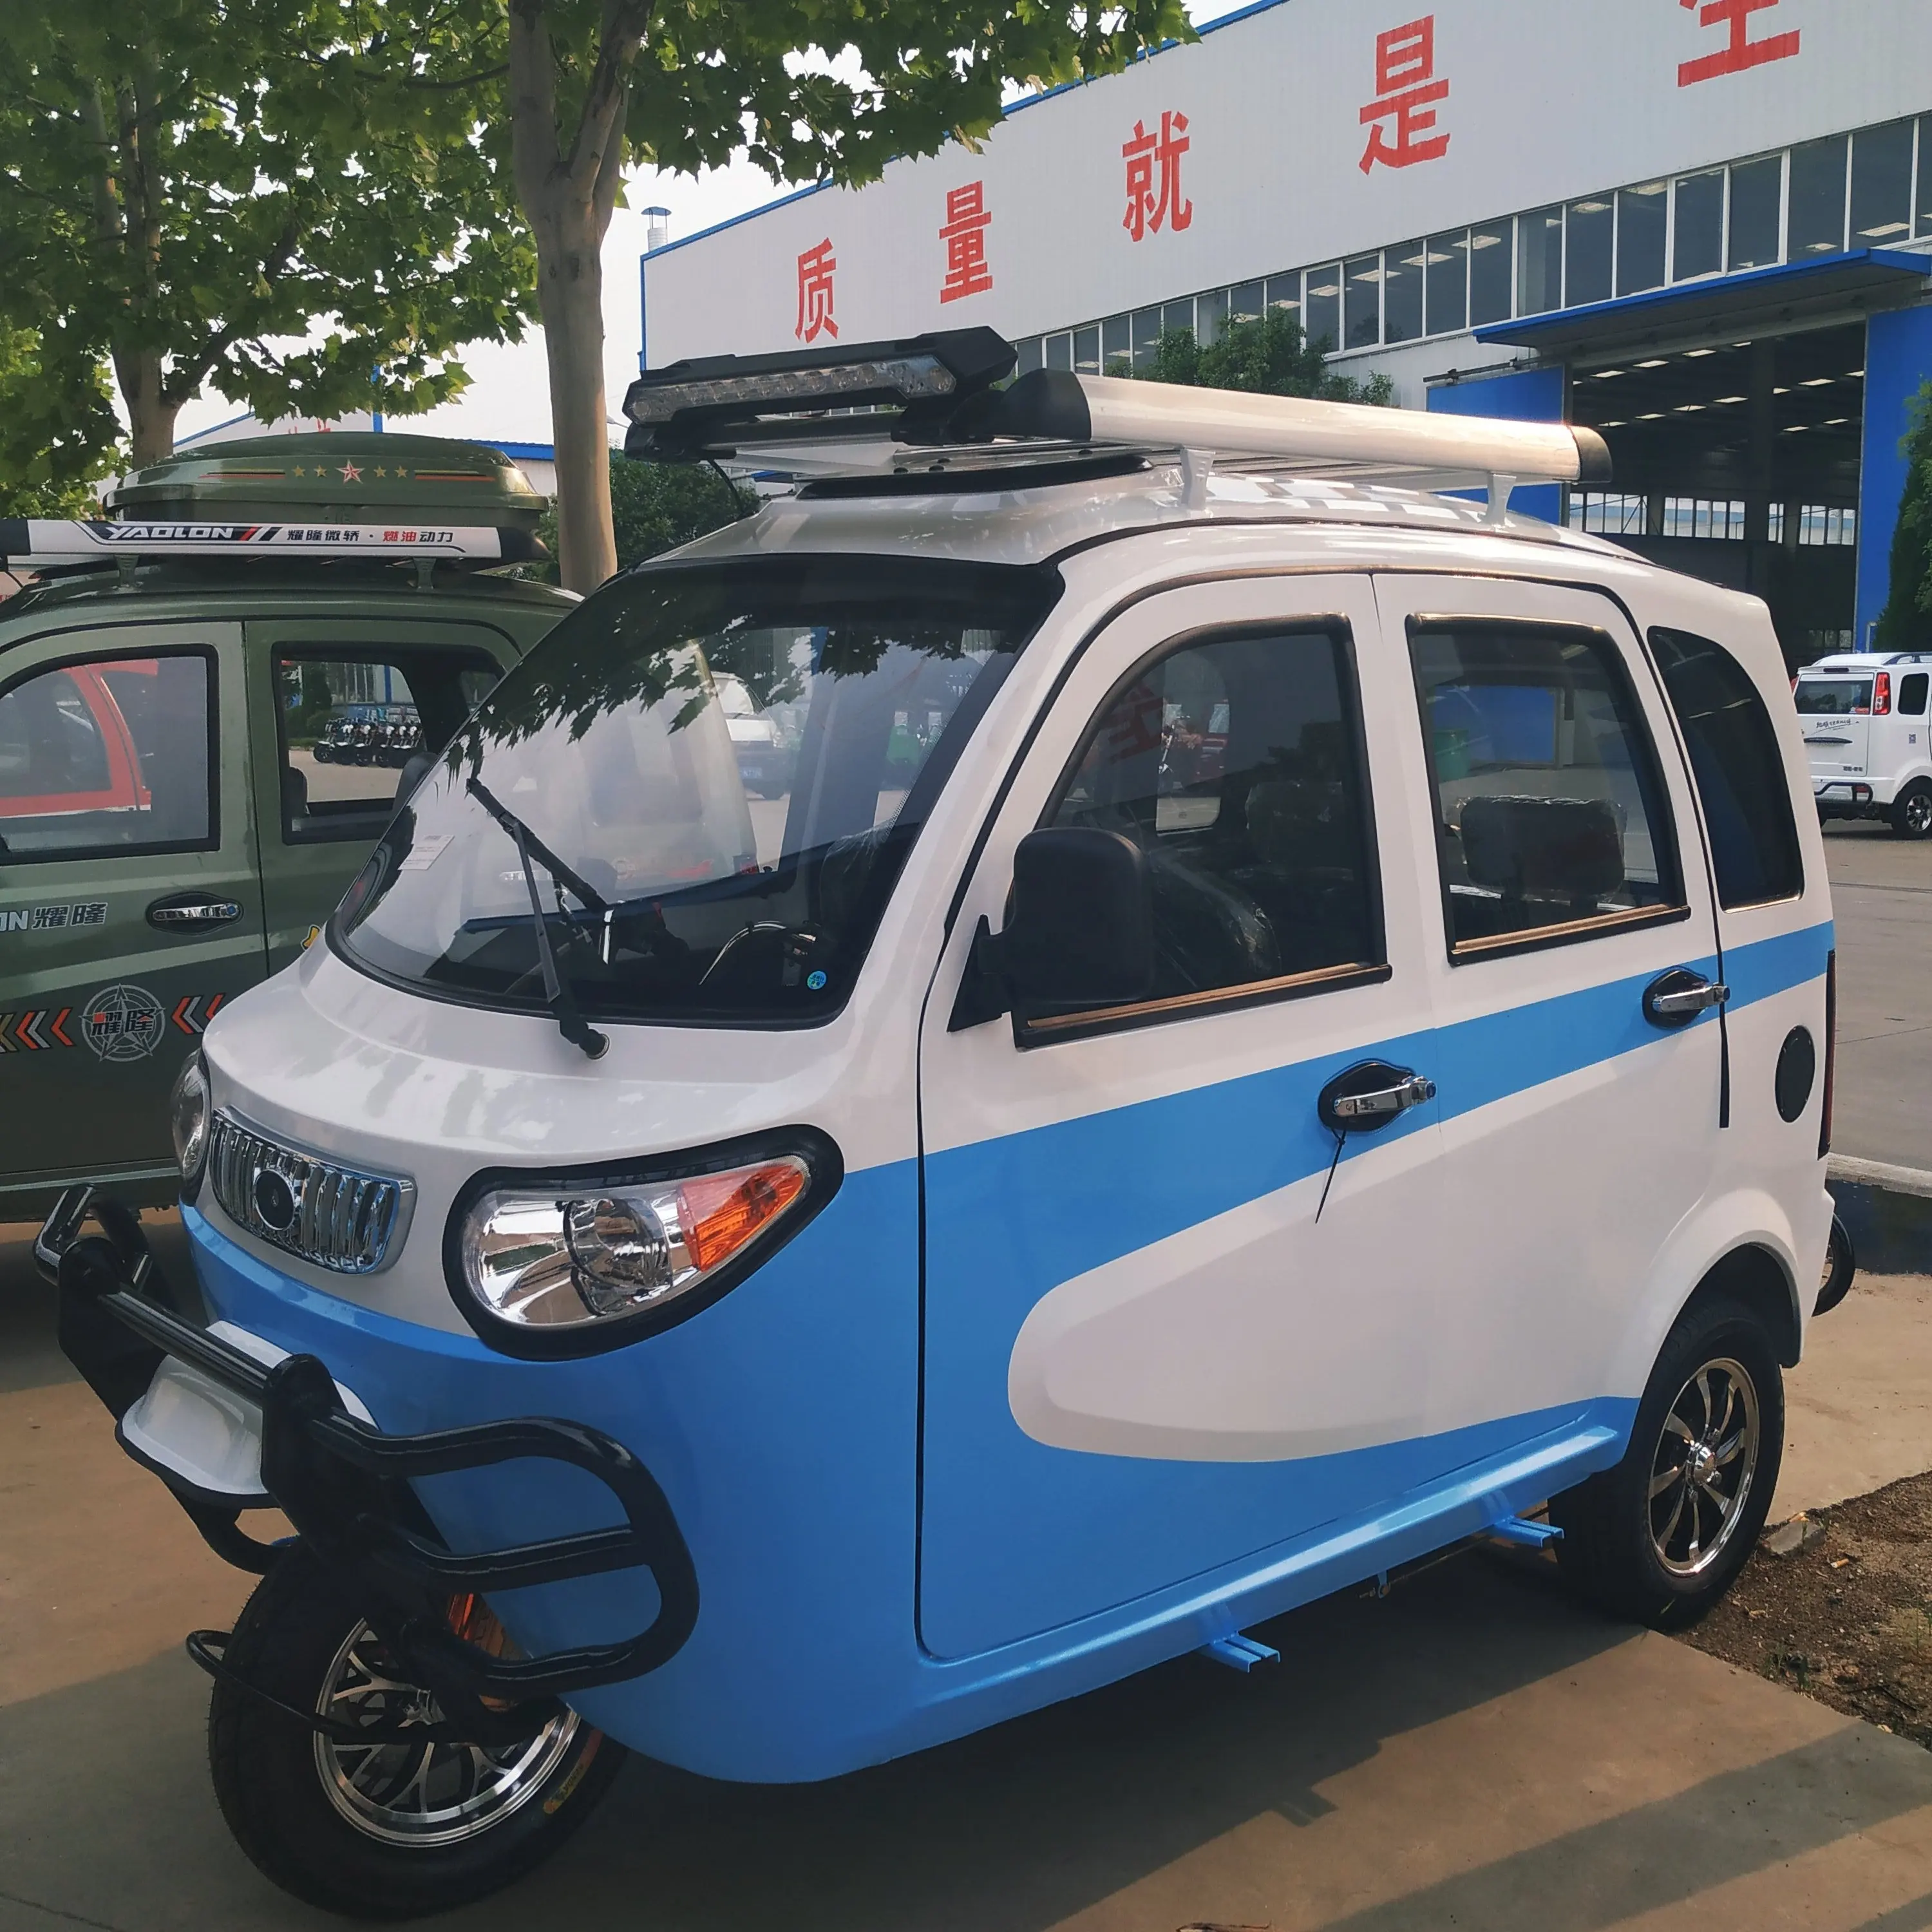 Горячая Распродажа, Китай, трехколесный пассажирский моторизованный трехколесный мотоцикл YAOLON Rrand Mototaxi, в наличии